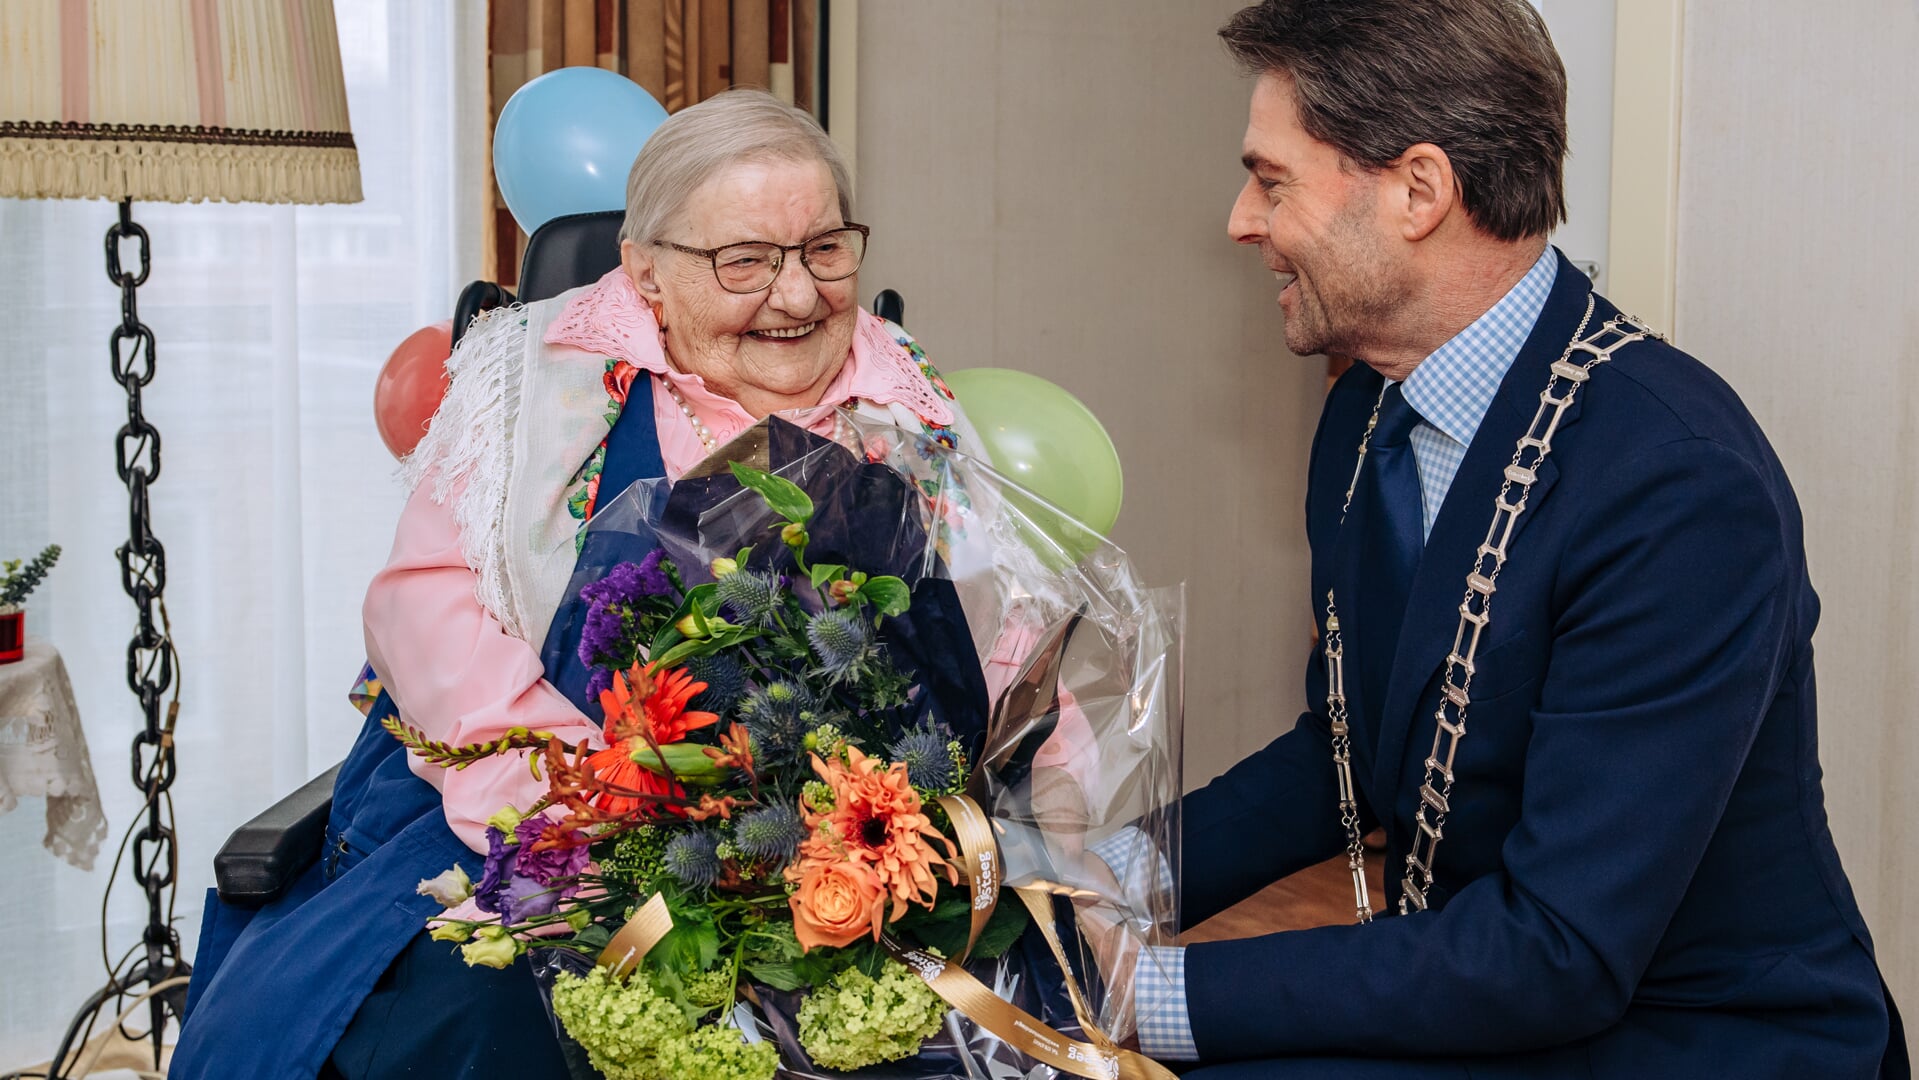  Voor deze bijzondere verjaardag had de locoburgemeester een mooie bos bloemen en een doosje bonbons meegenomen. (foto: Heyblom Fotografie)